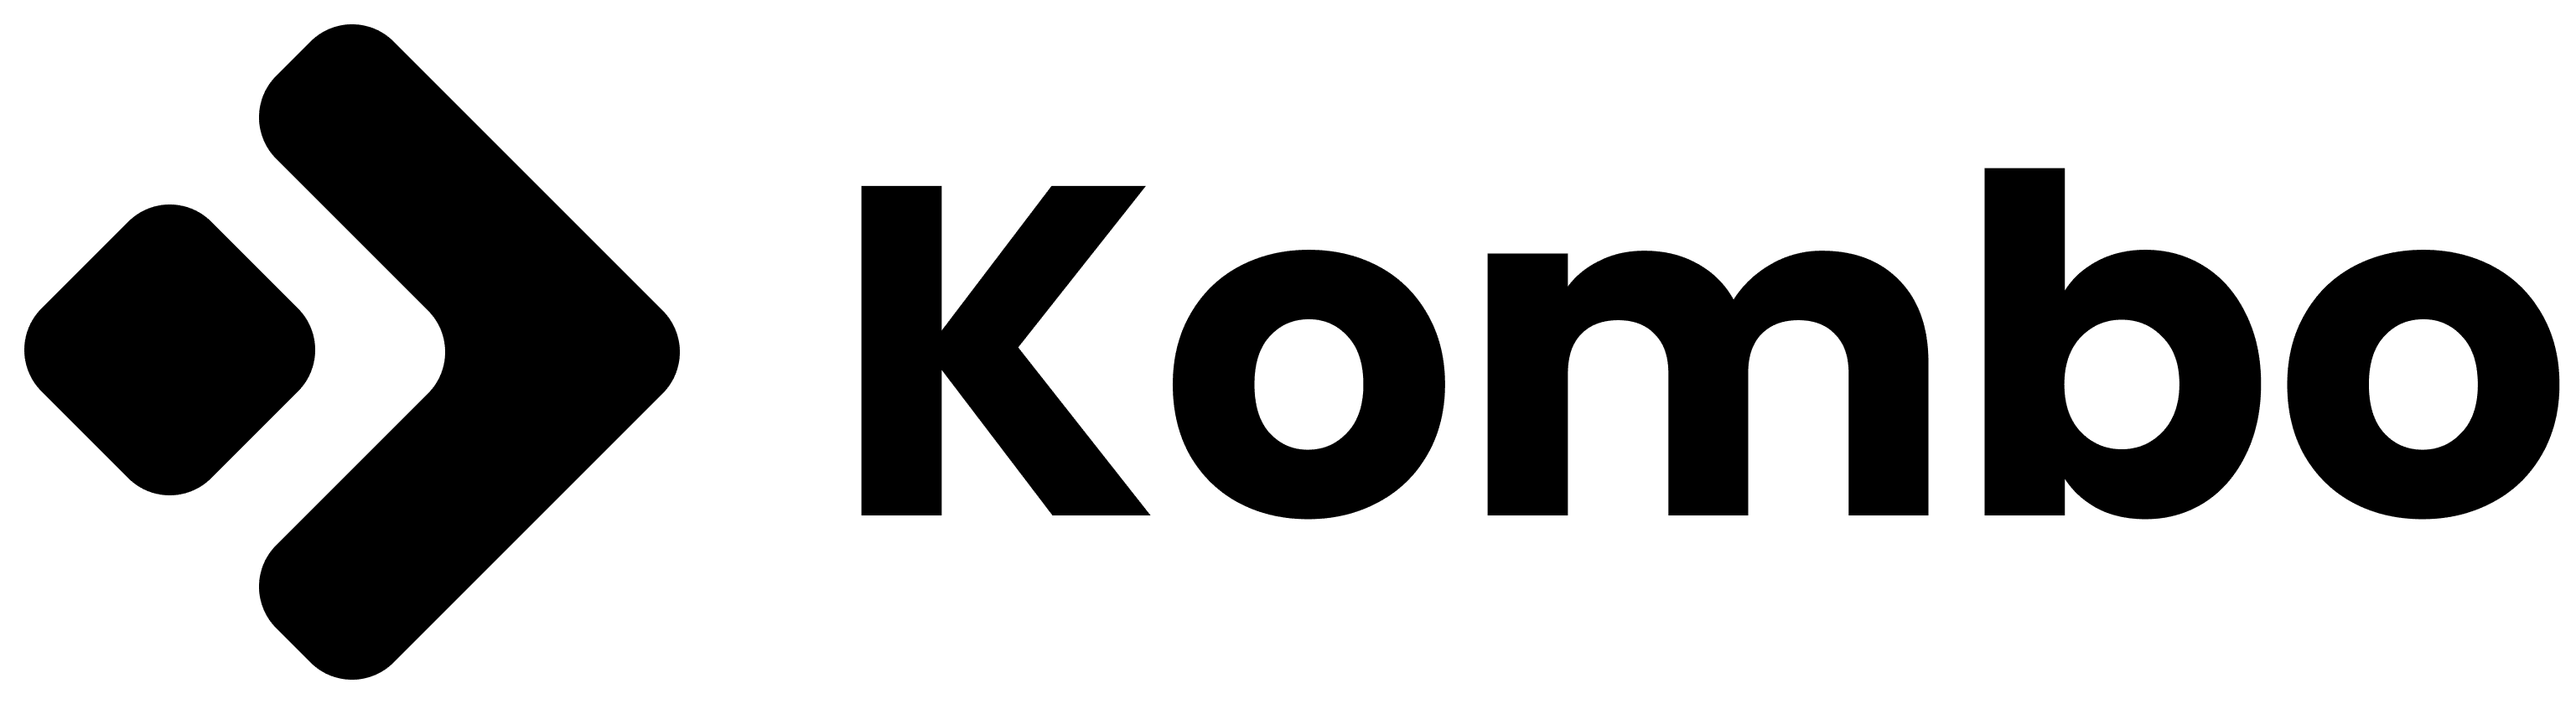 StackOne - logo-black-kombo.png